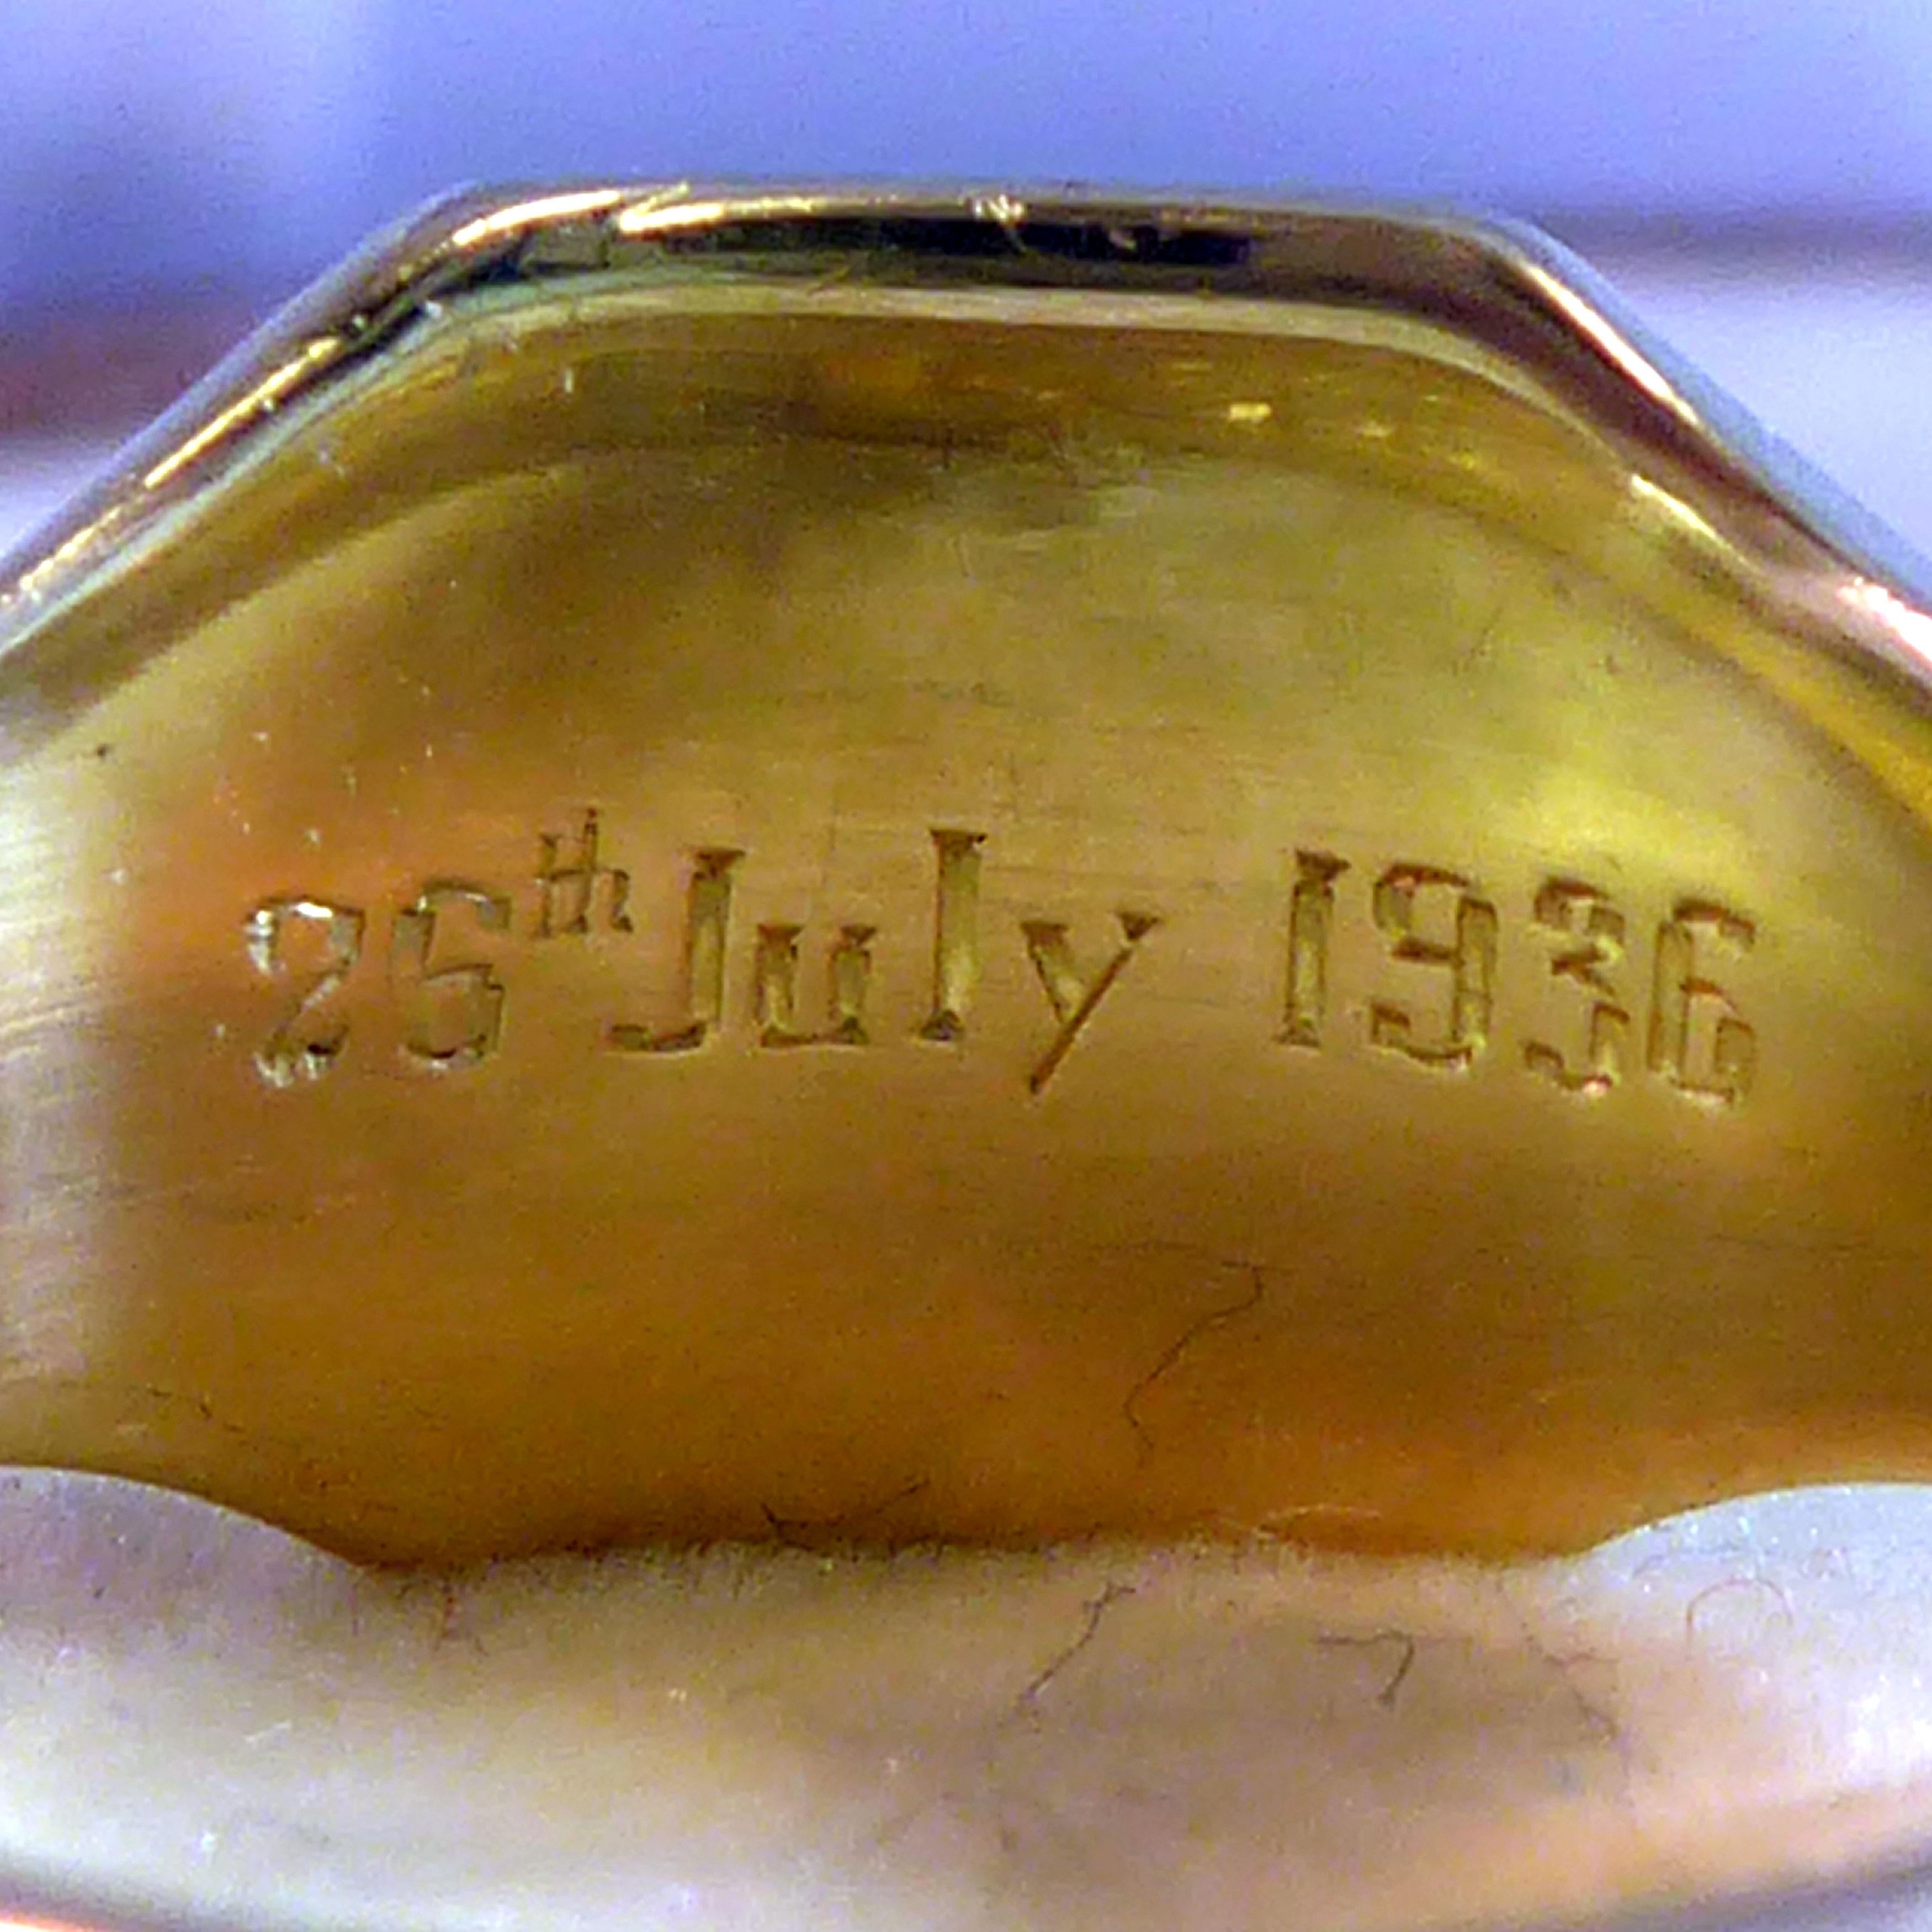 George V Vintage Gold Signet Ring, Initialled Engraved Seal, 18 Carat, Birmingham 1935